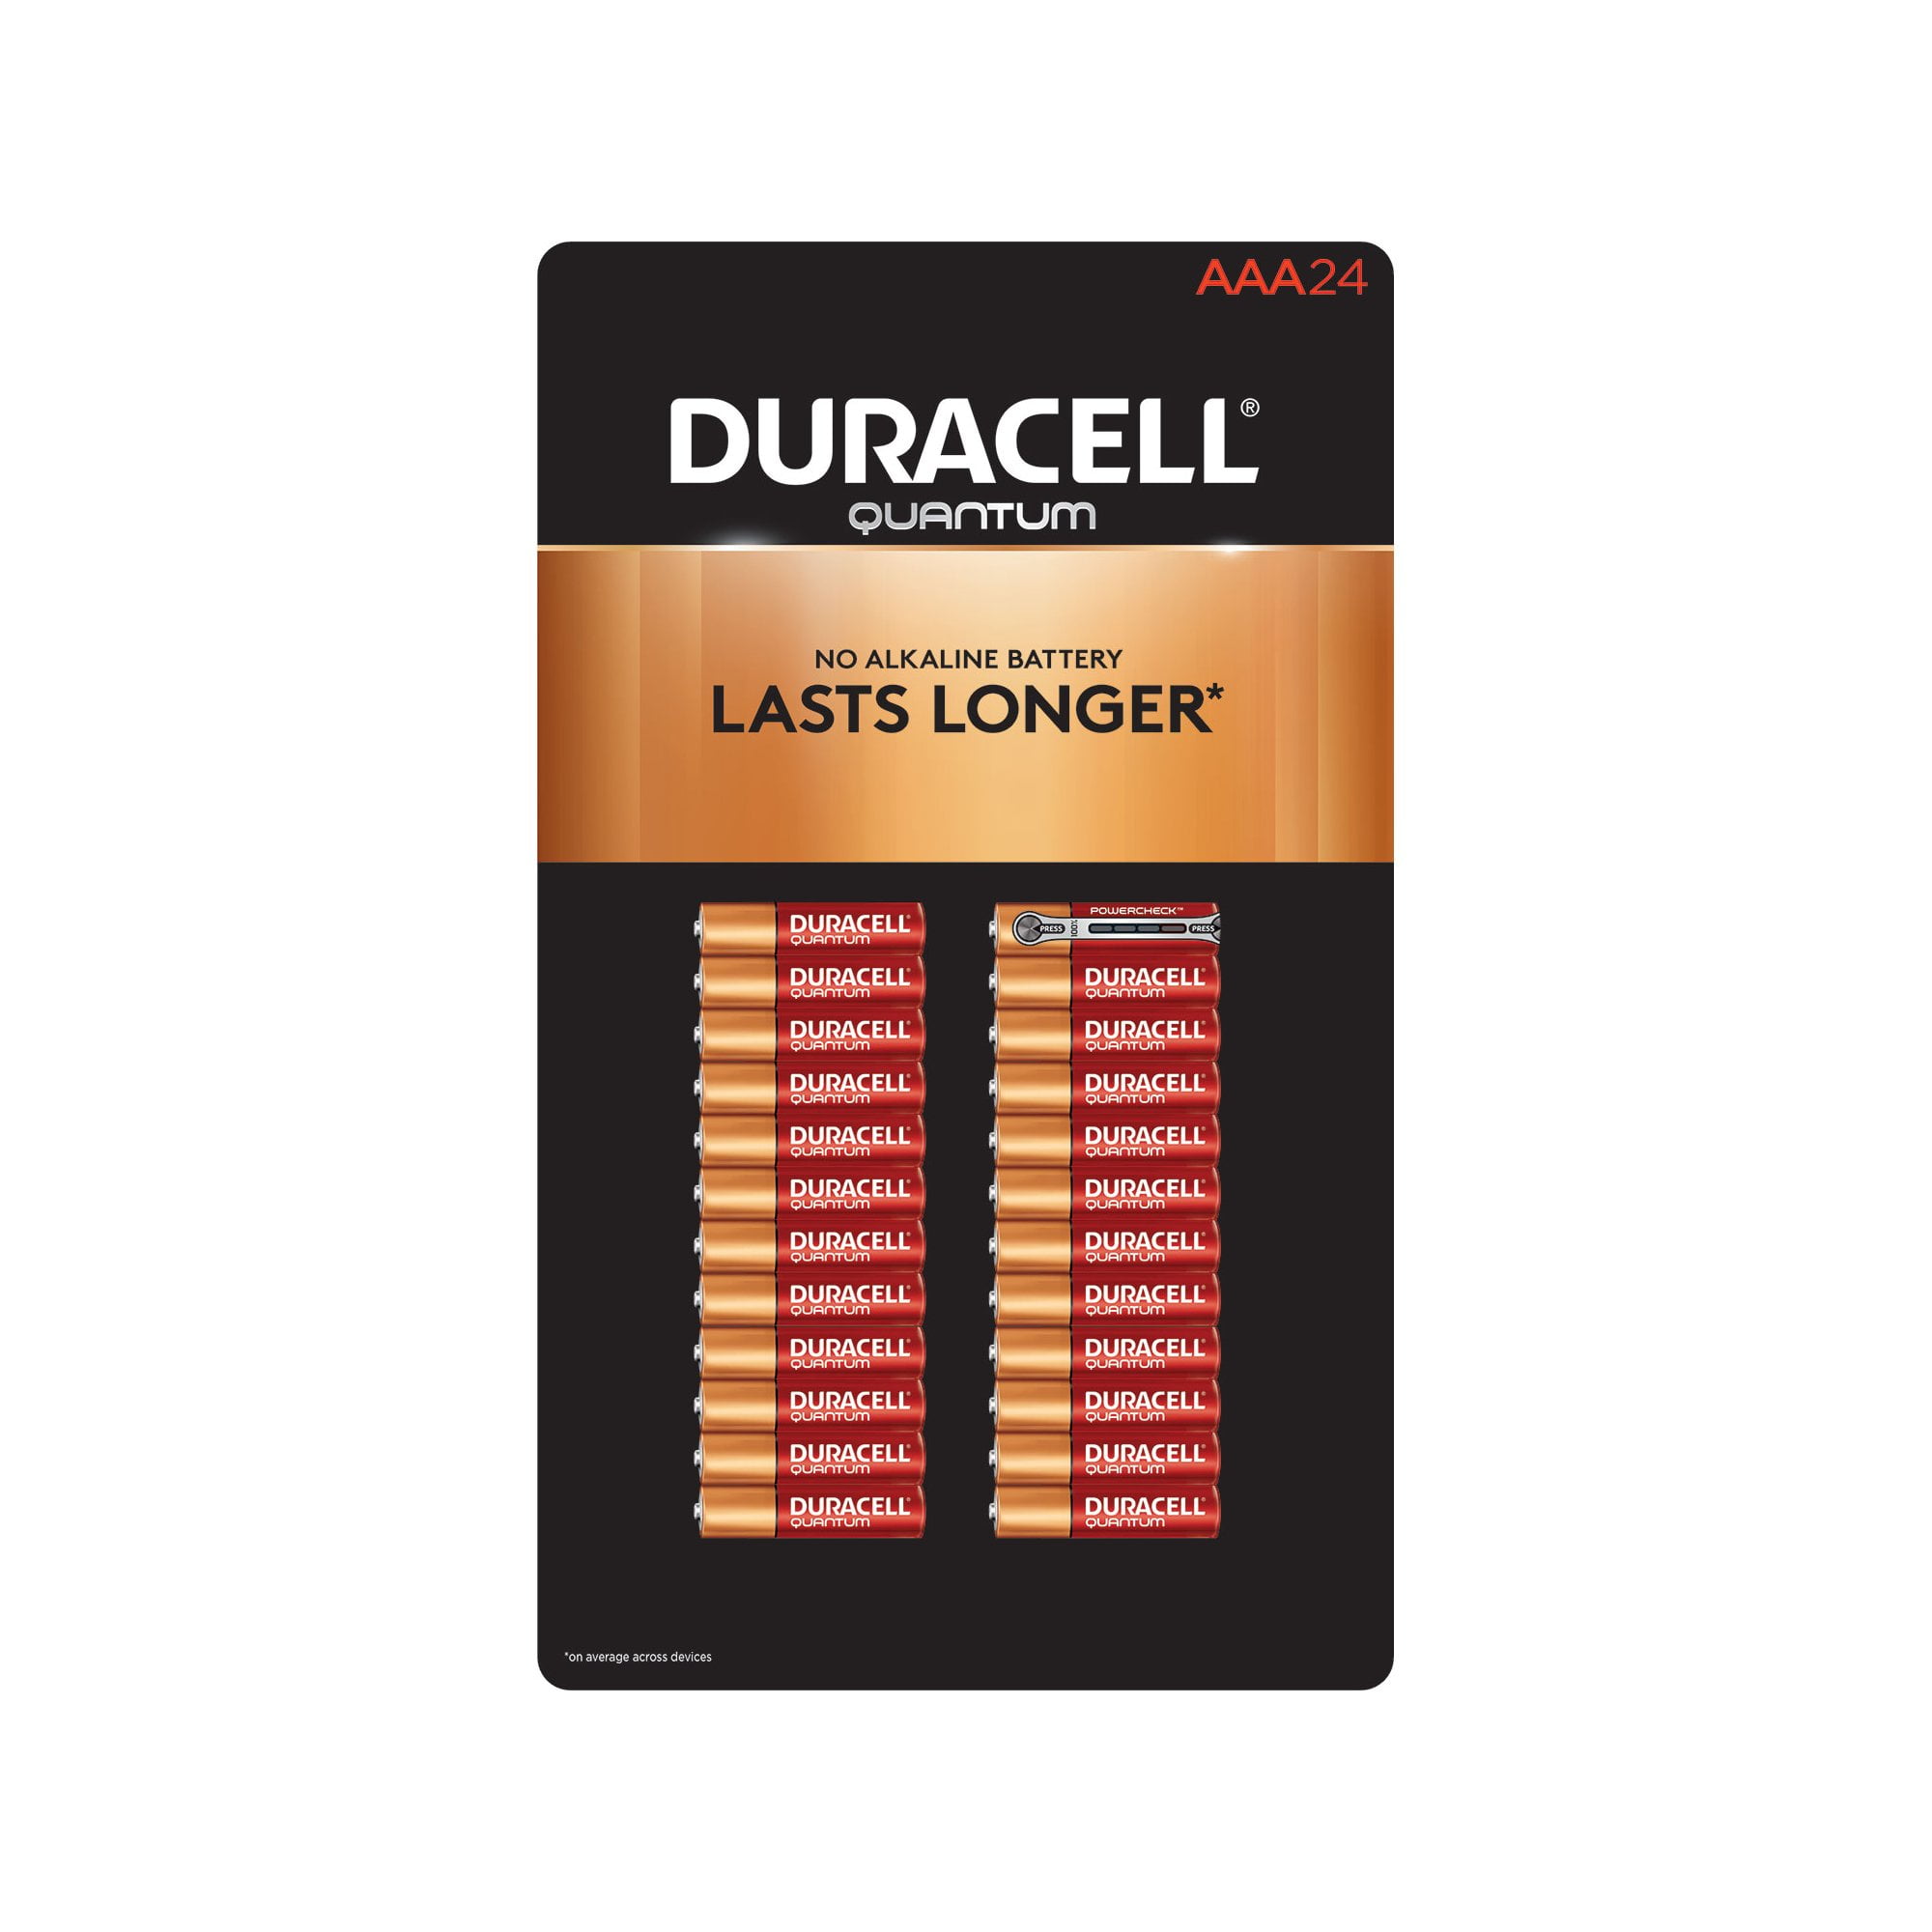 Duracell Quantum Alkaline Aaa Batteries 24 Pk